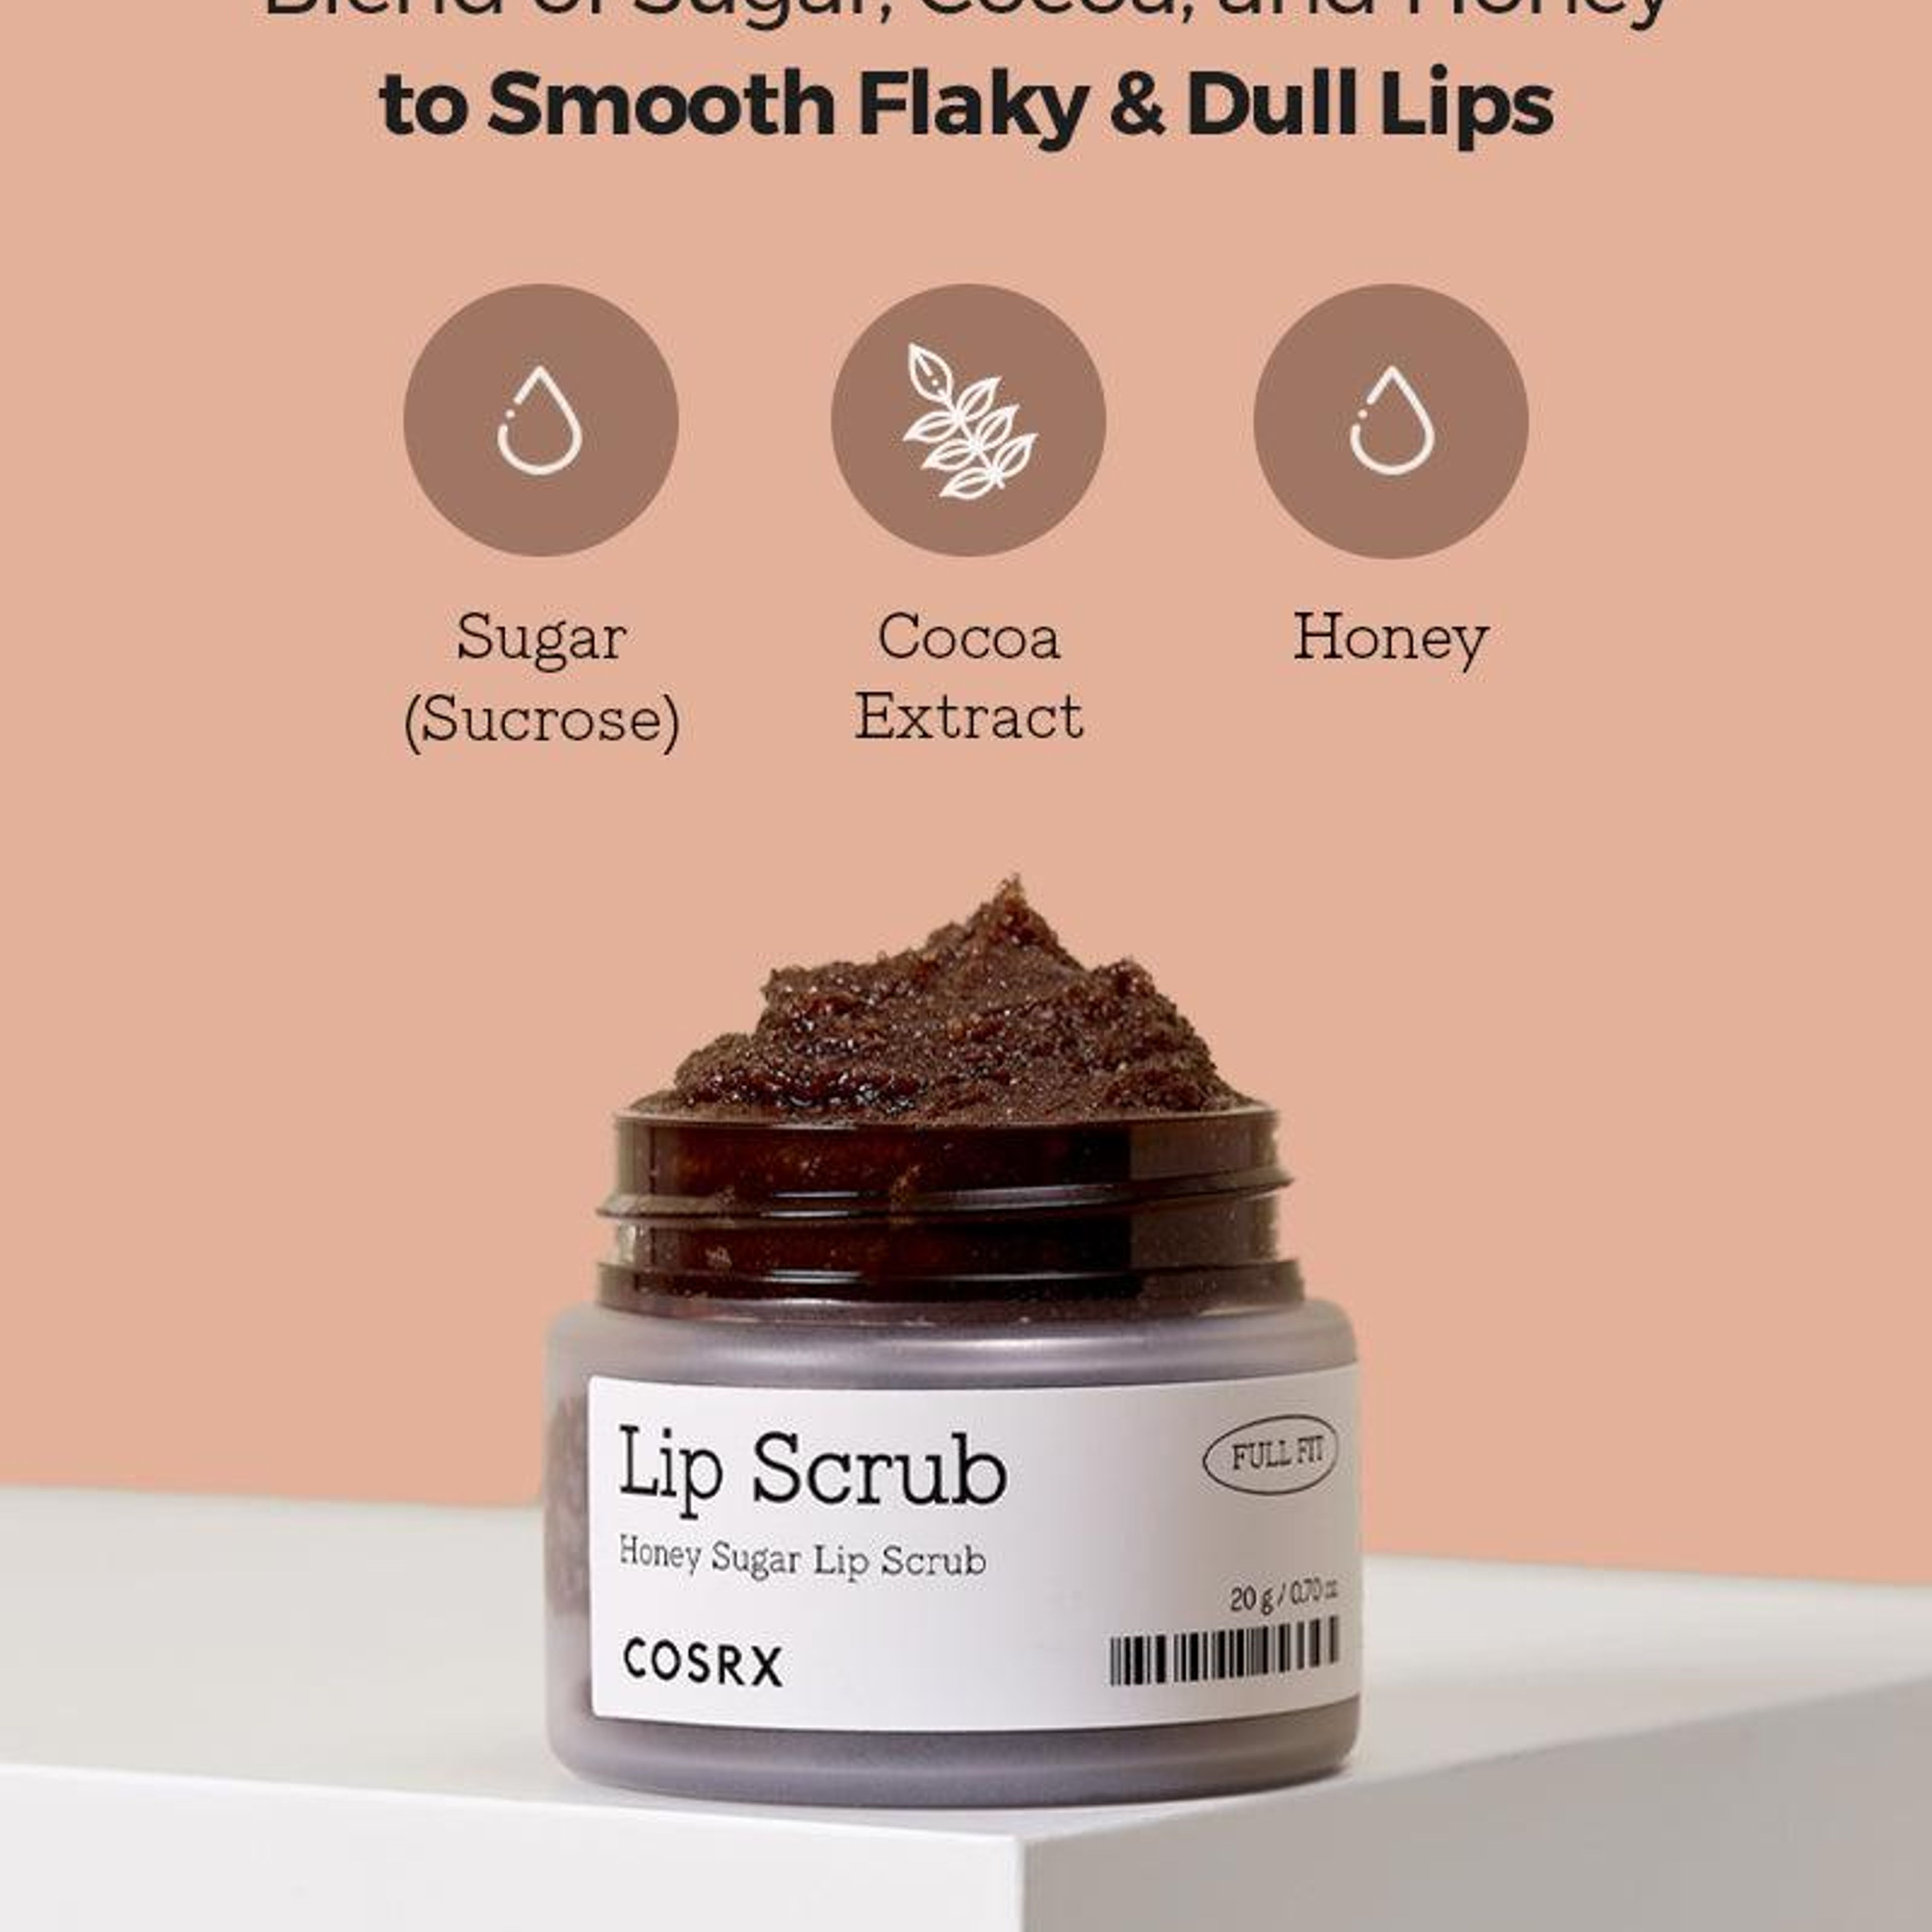 Lip Scrub - Full Fit Honey Sugar Lip Scrub